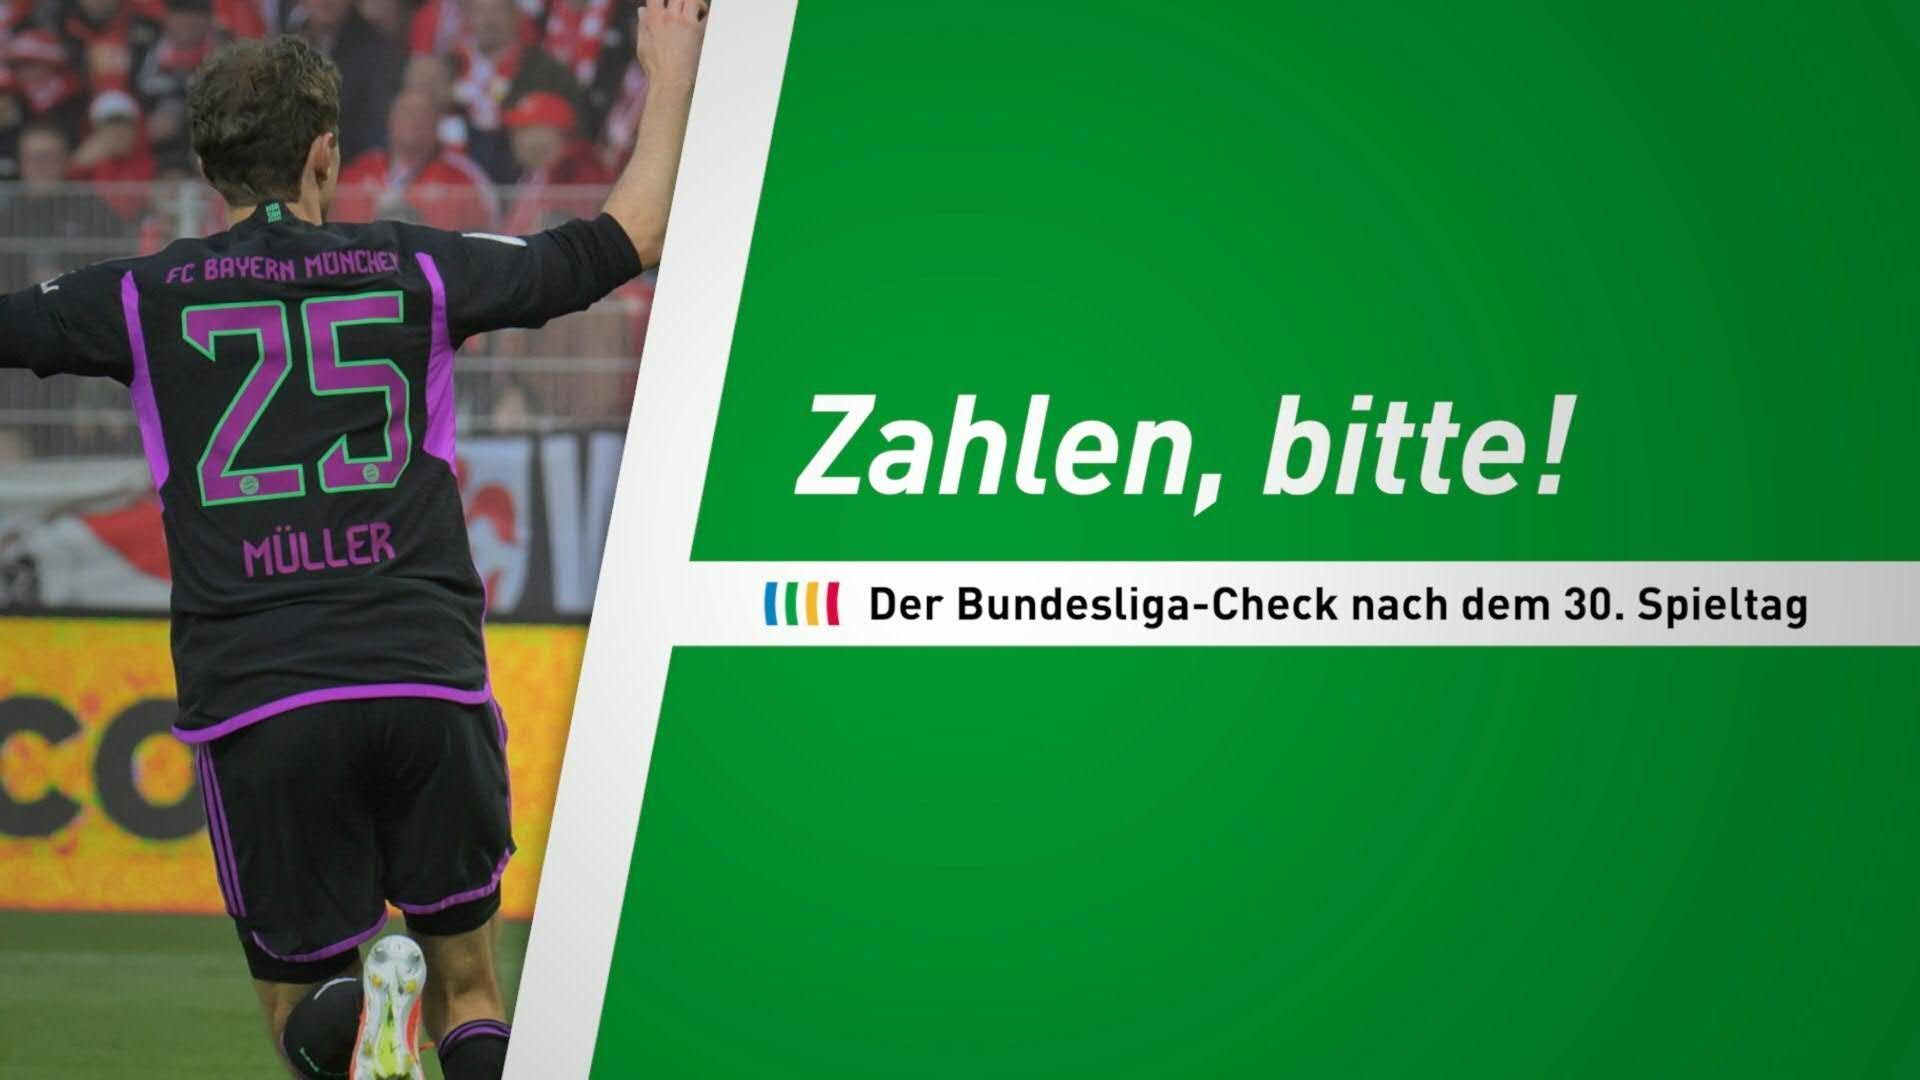 Zahlen, bitte! Der Bundesliga-Check nach dem 30. Spieltag